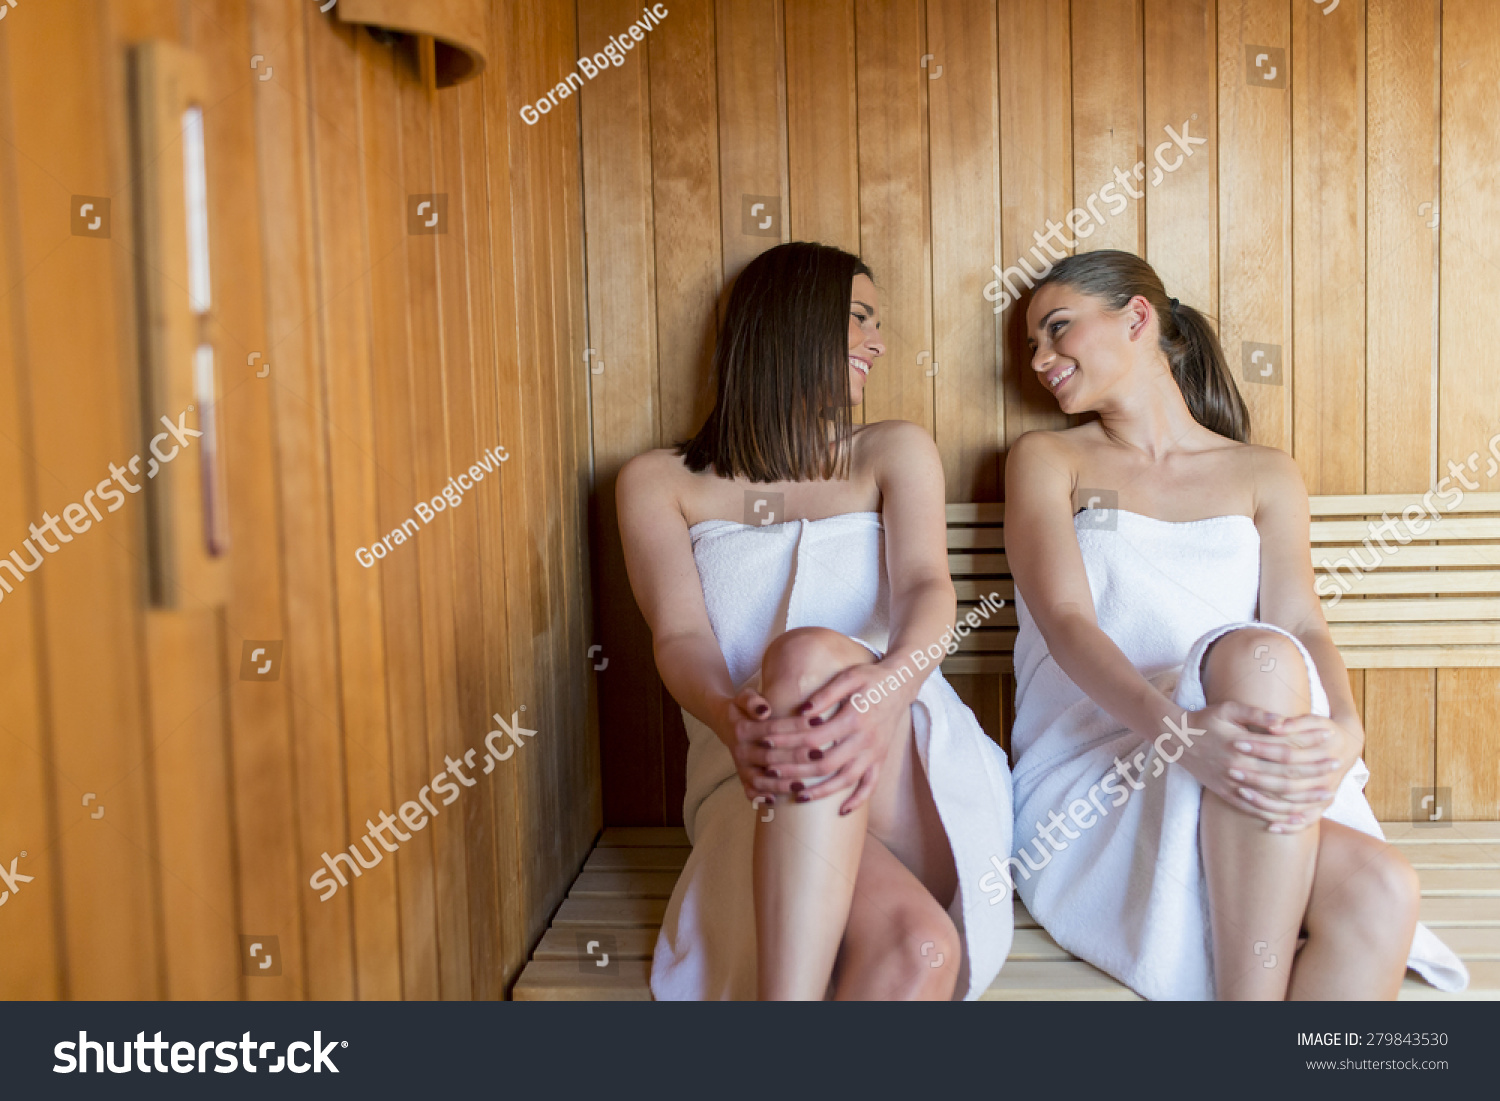 подглядывание за голыми женщинами в банях фото 115